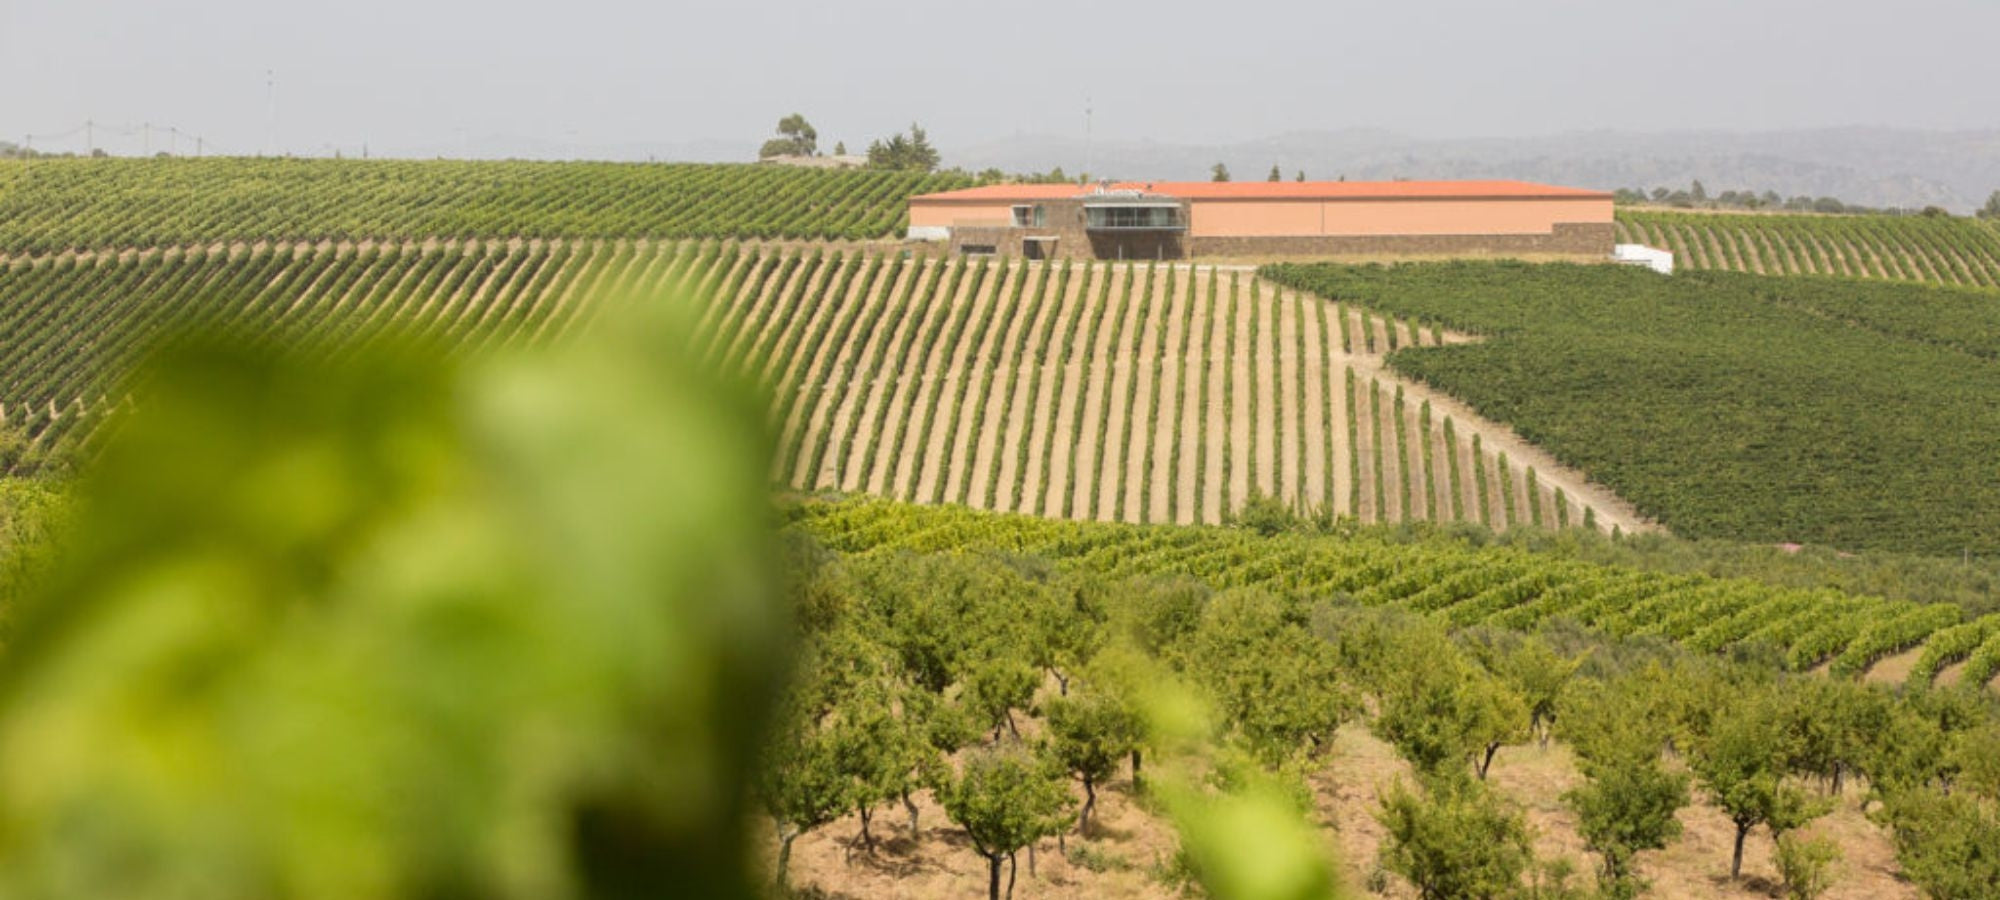 Das Foto zeigt die Quinta dos Castelares, ein Weingut im Douro-Tal in Portugal. Das Gebäude ist aus Stein und hat ein rotes Dach. Es ist von Weinbergen umgeben.